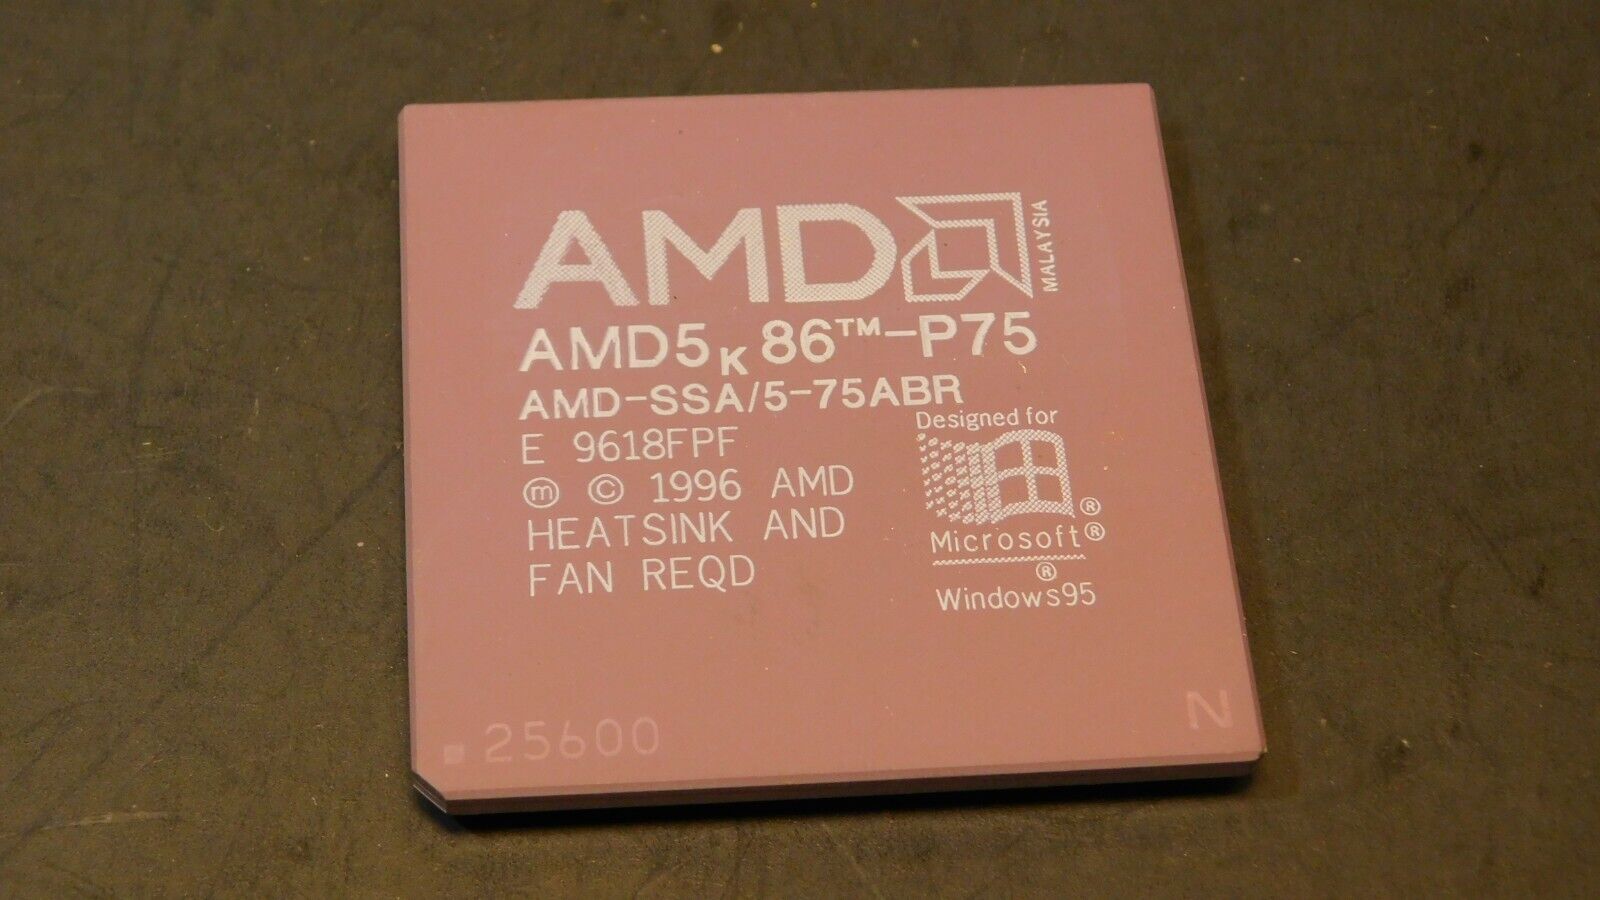 Vintage AMD Am5x86 P75 SSA/5-75ABR CPU